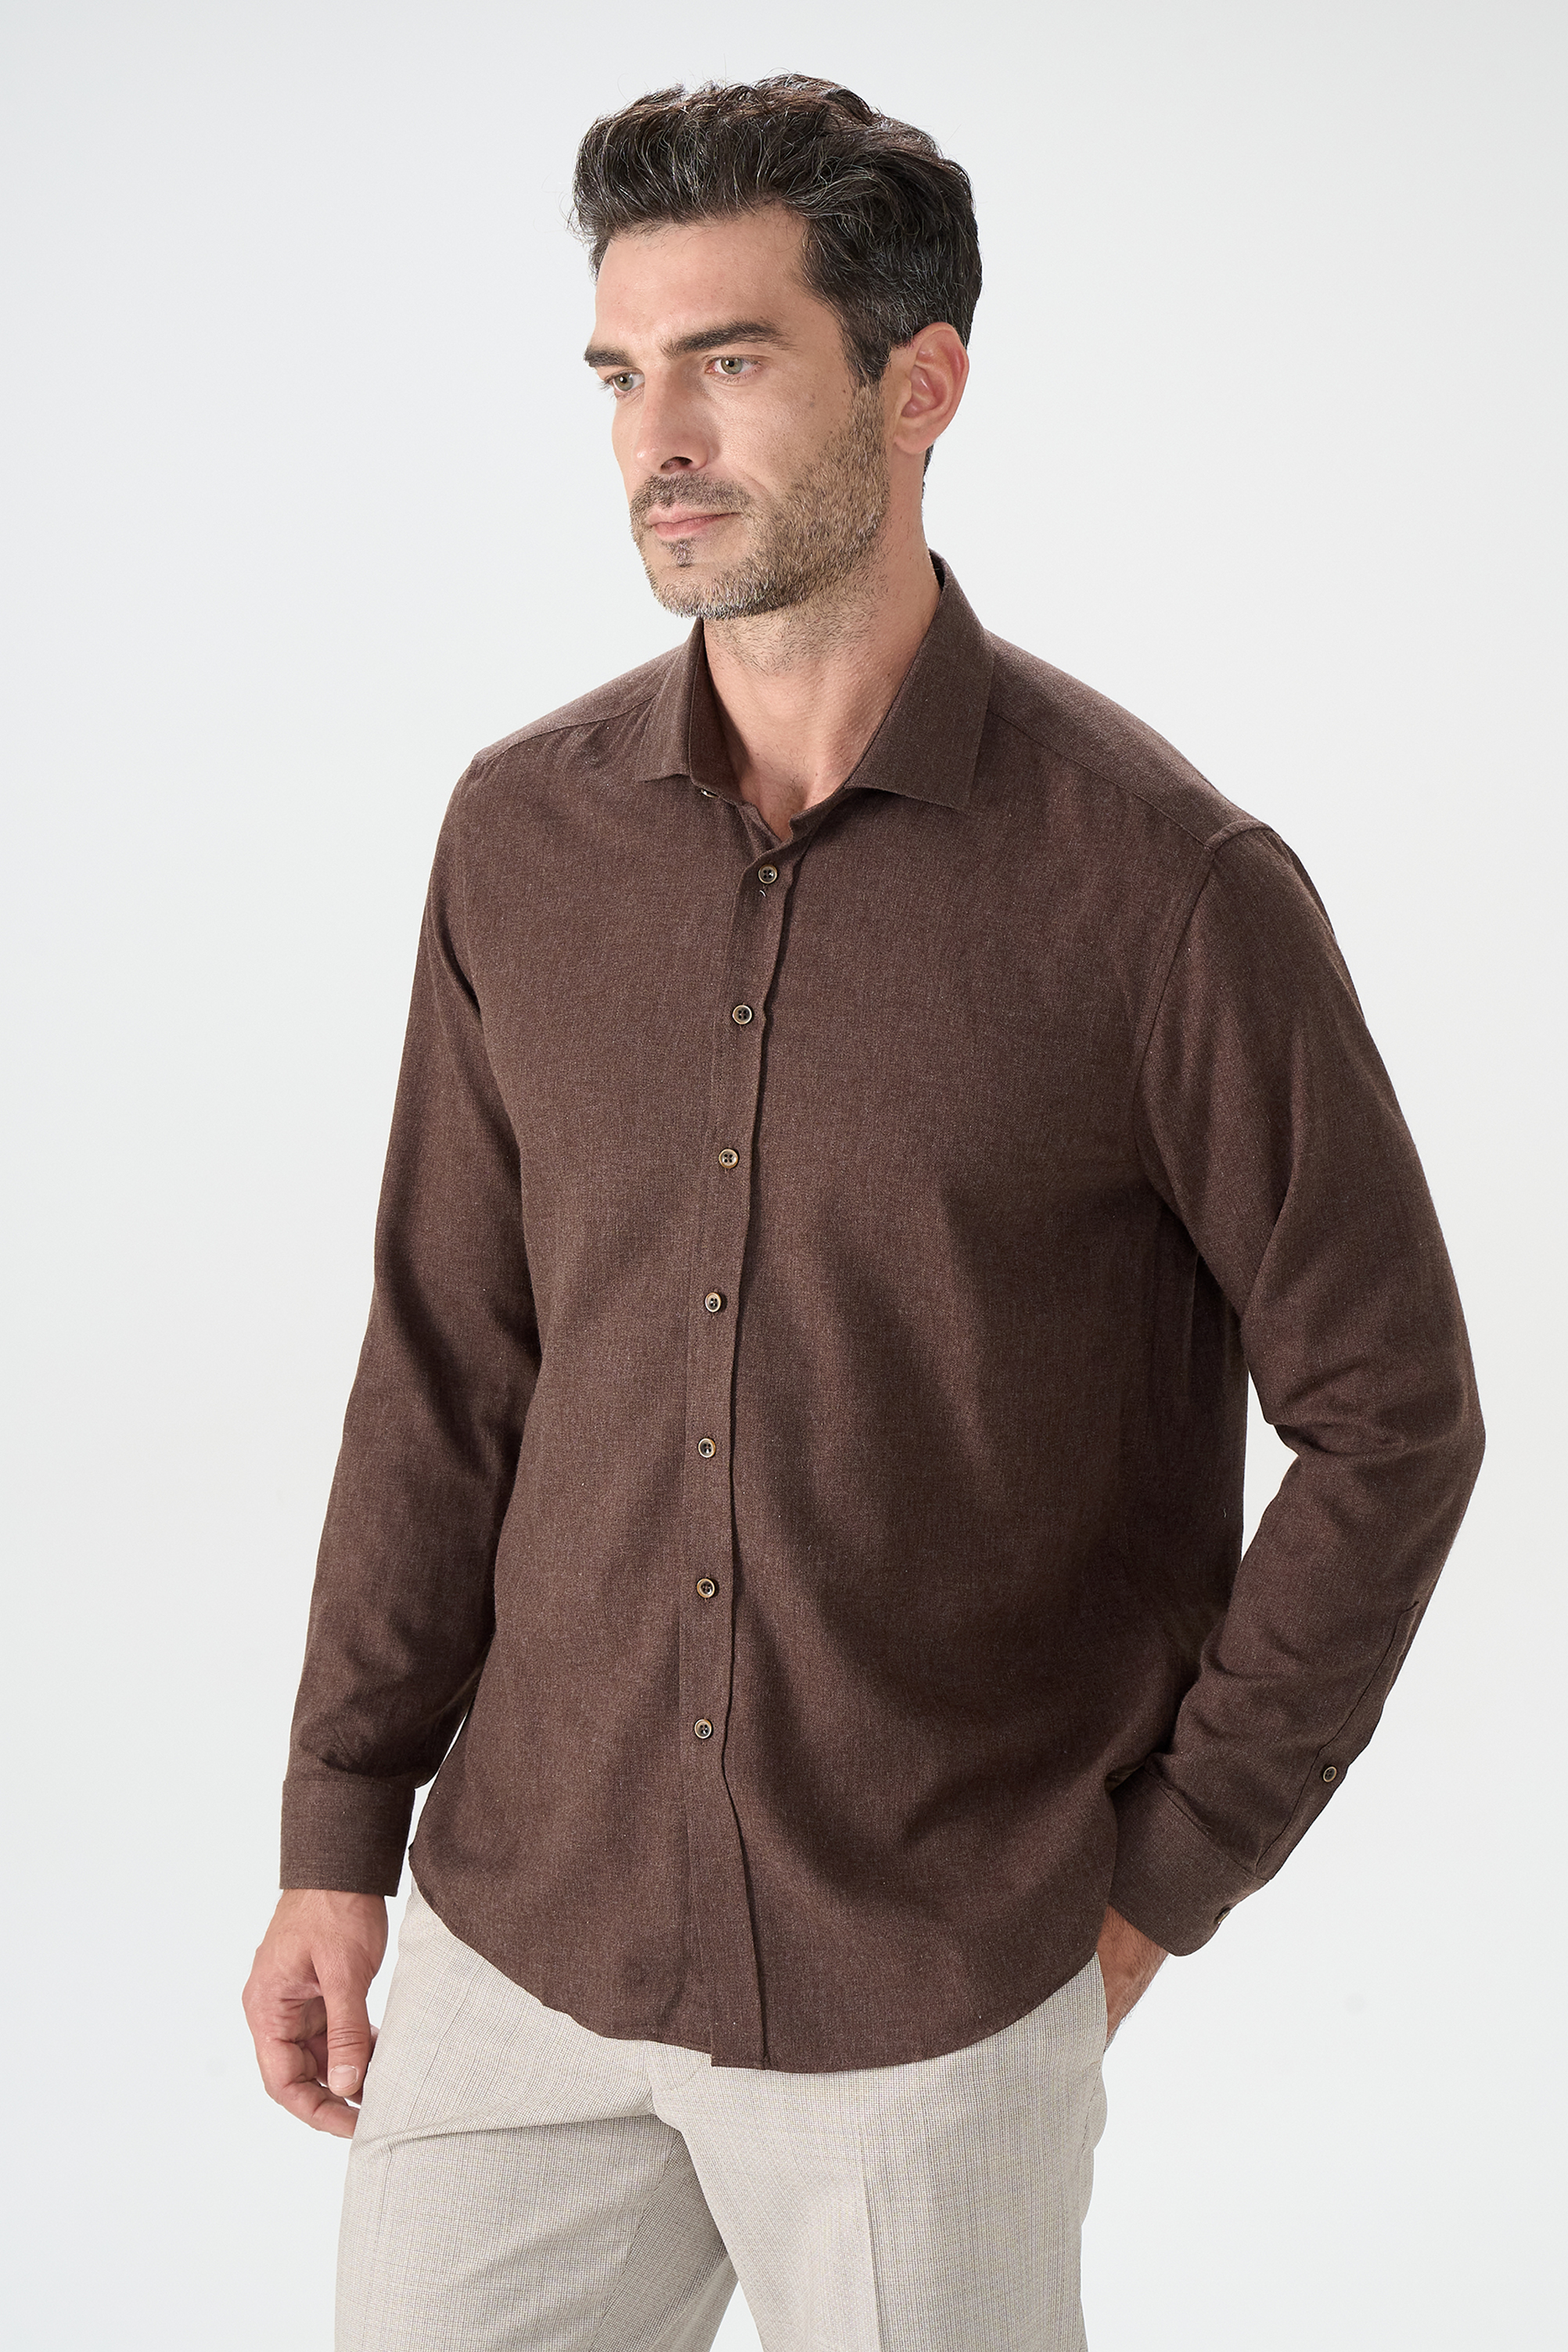 Рубашка мужская Cacharel G051SZ0040ANKA коричневая XL